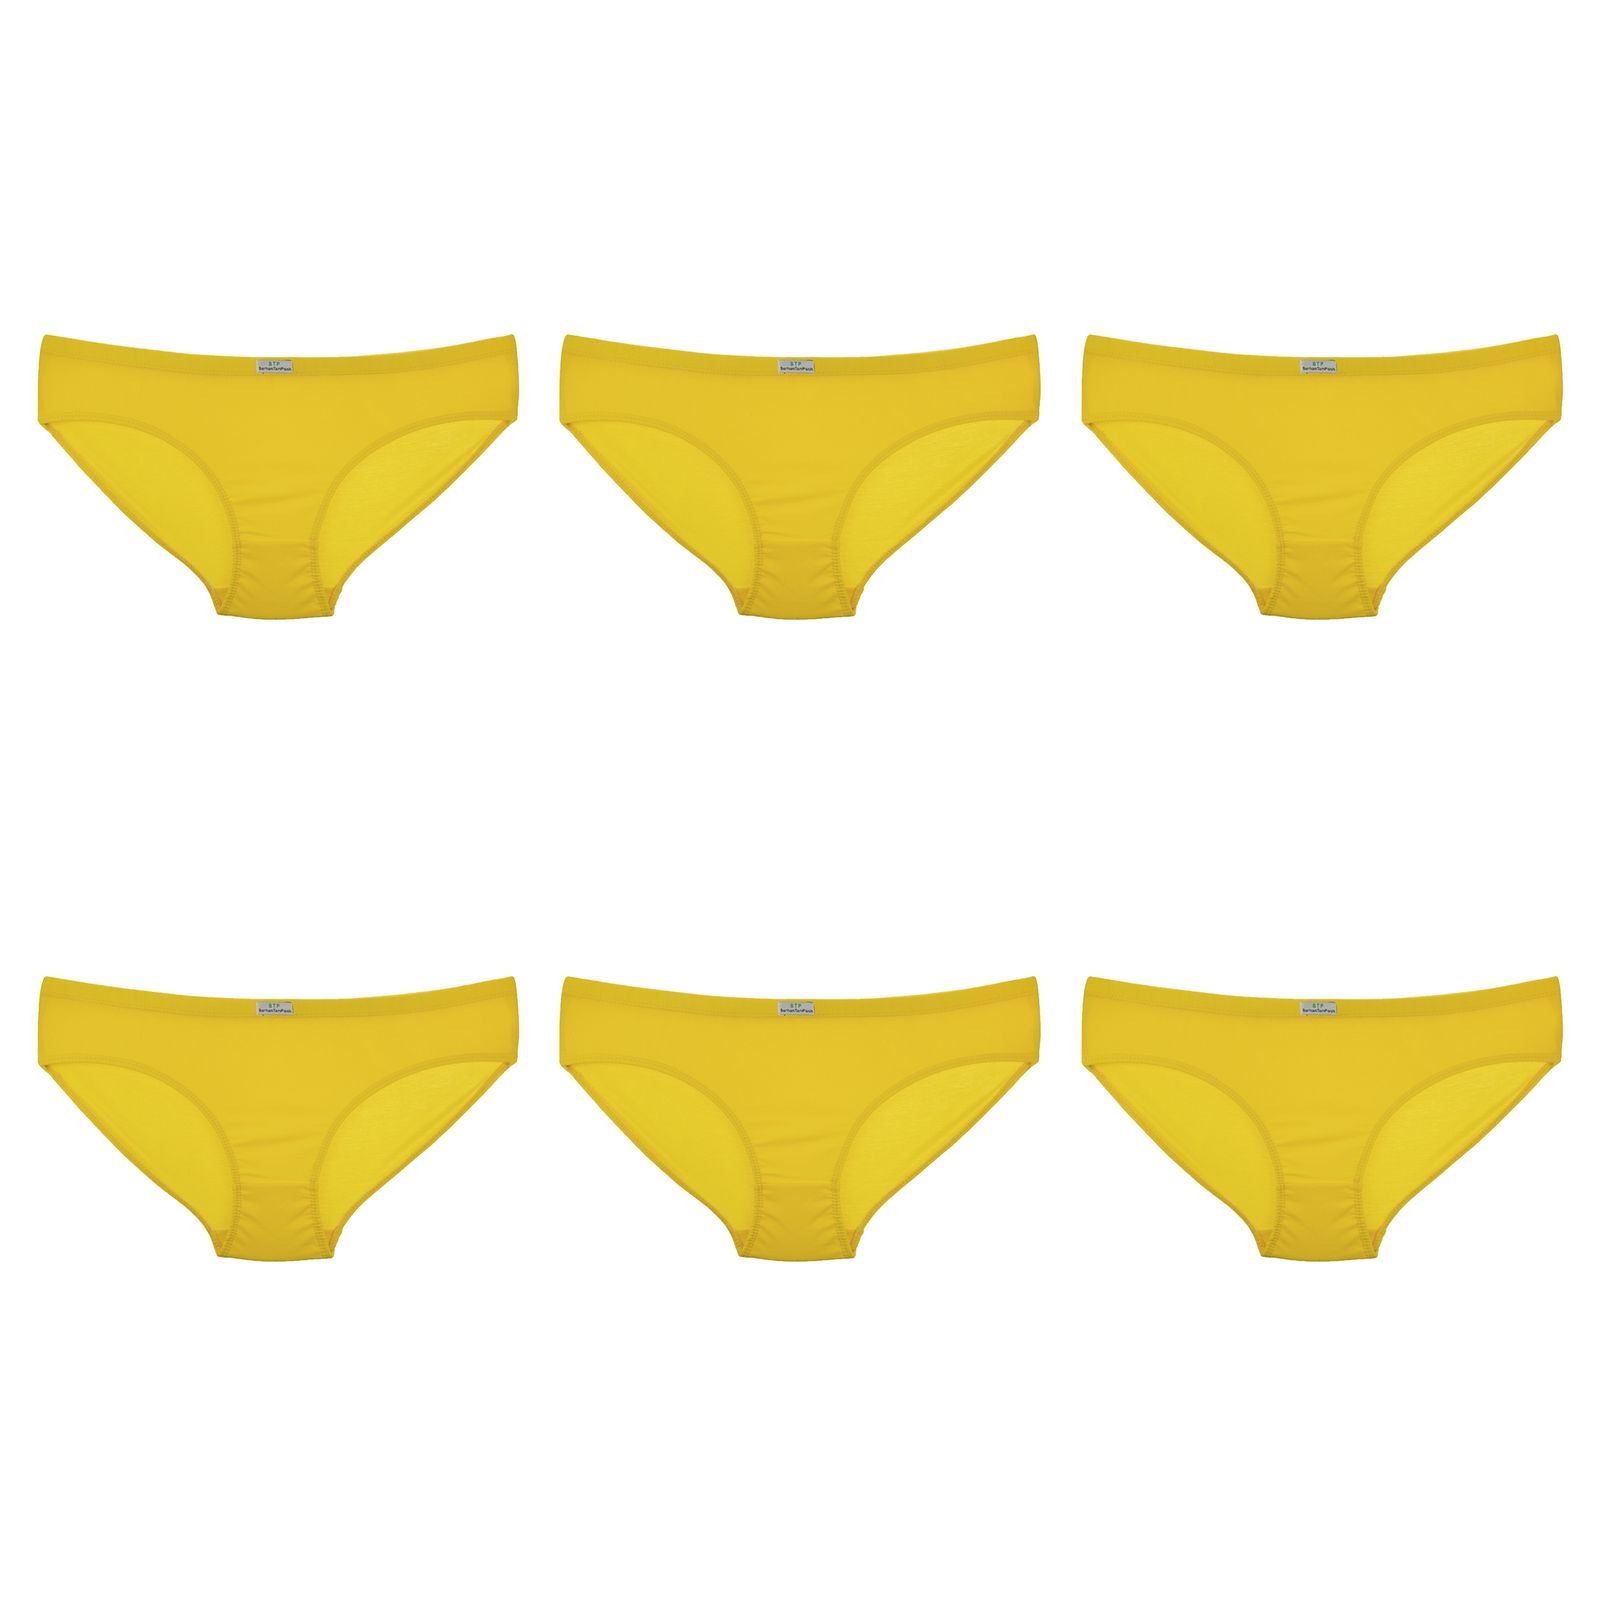 شورت زنانه برهان تن پوش مدل اسلیپ 5-03 بسته 6 عددی رنگ زرد